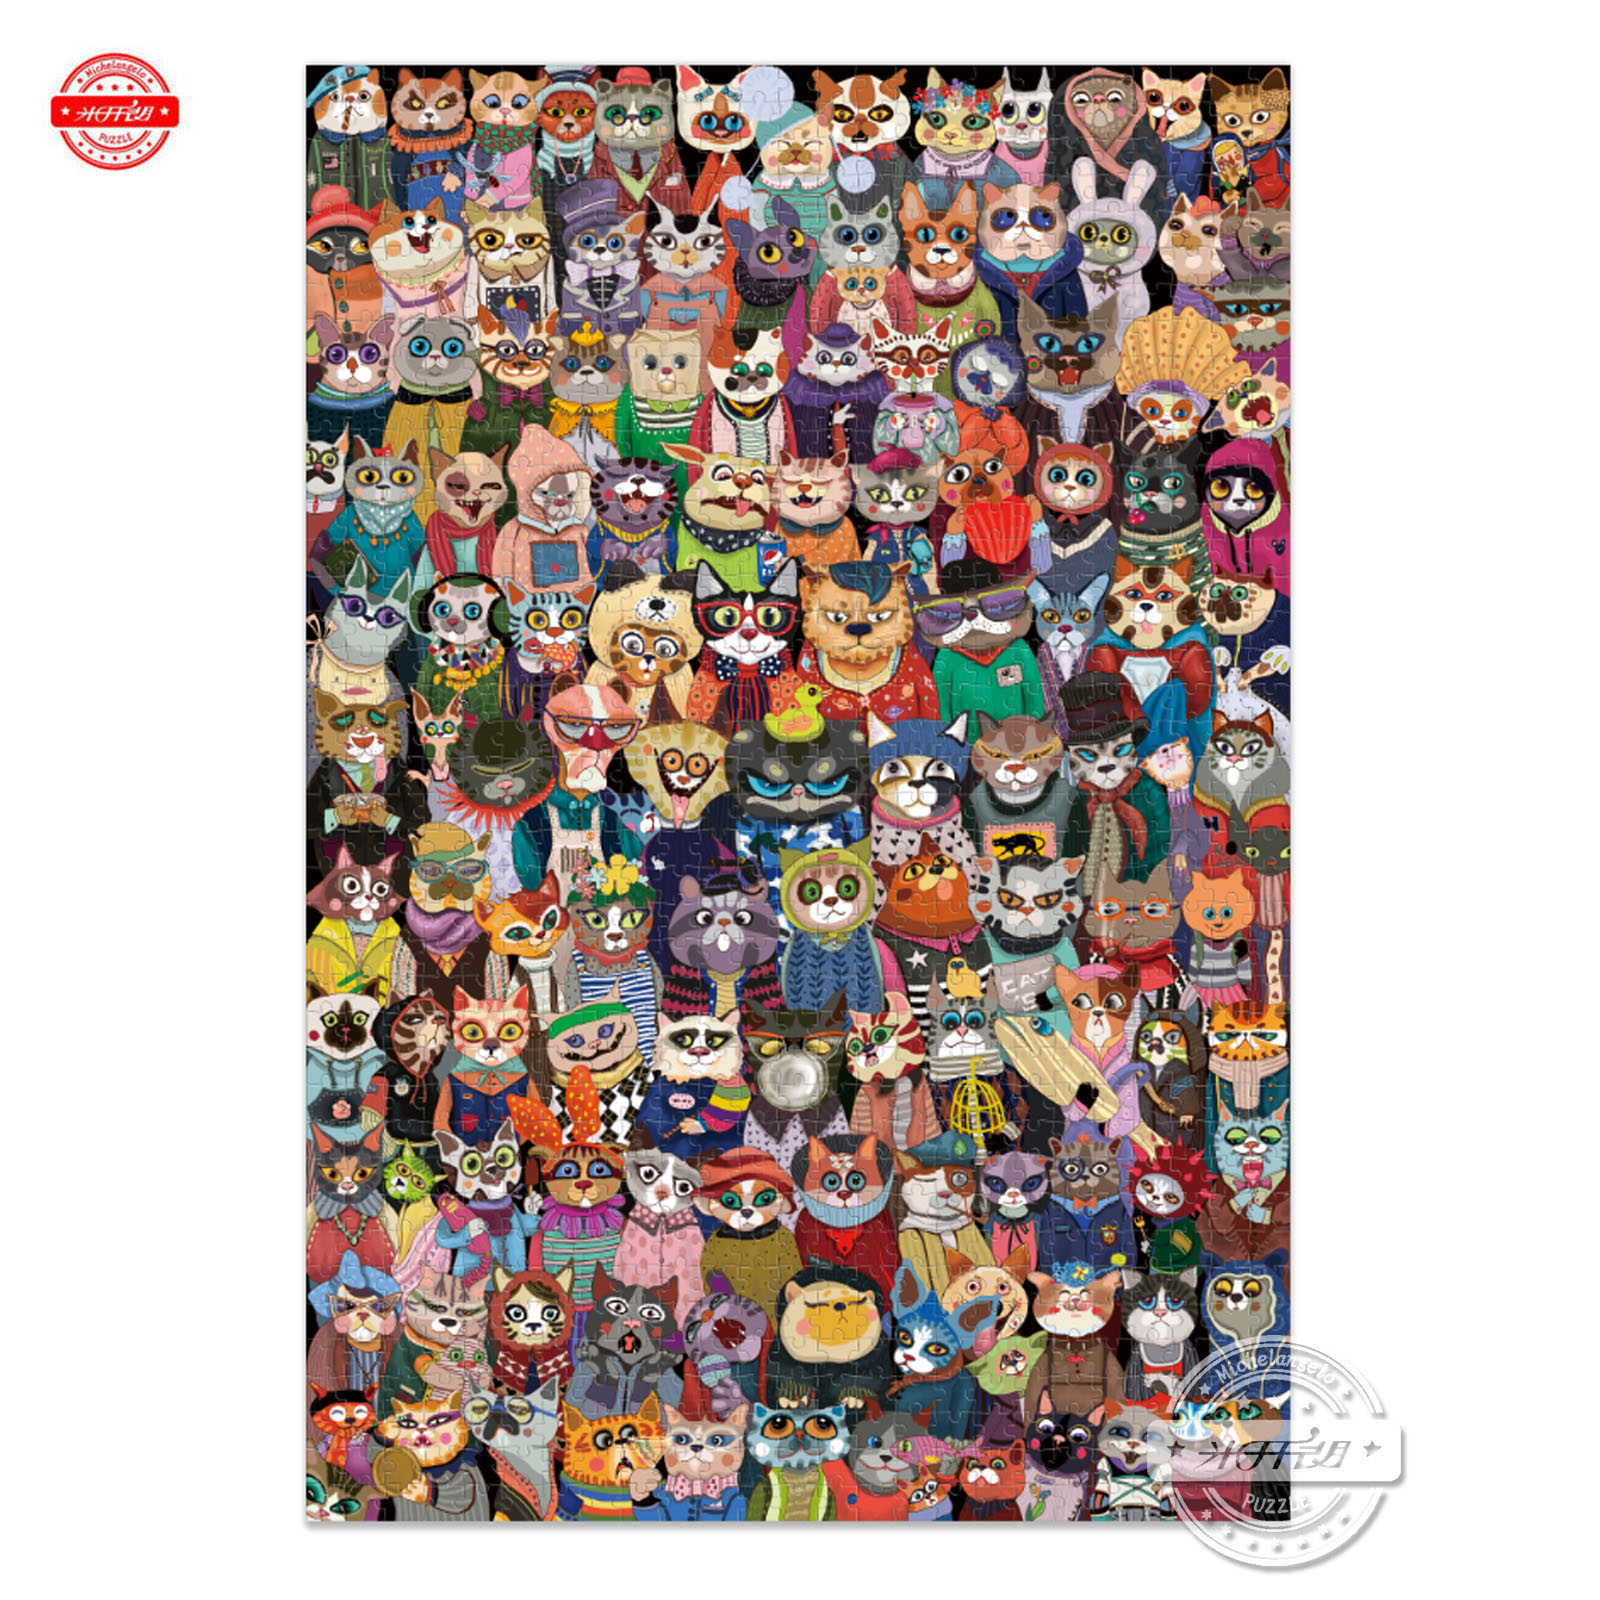 拼图1000片纸质猫猫大合影米开朗纸质拼图原创合集 -都是猫猫 玩具/童车/益智/积木/模型 拼图/拼板 原图主图